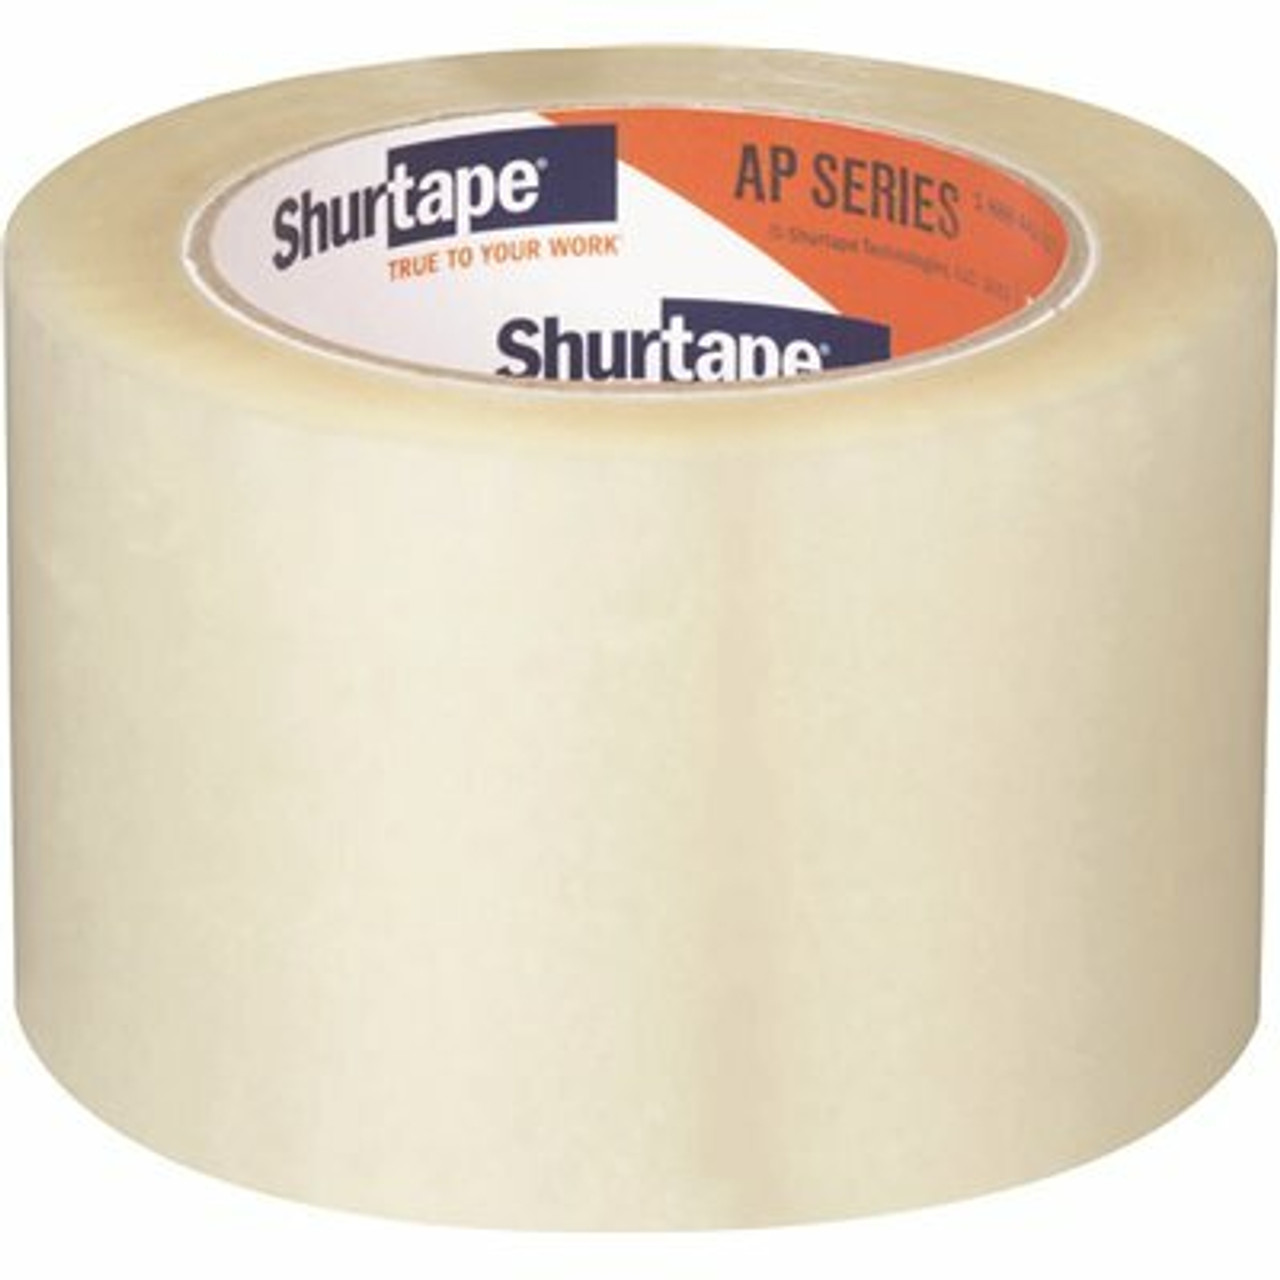 Shurtape Ap 180 Acrylic Packaging Tape, Clear, 1.8 Mils, 72Mm X 100M (2.83 In. X 109 Yds.), 1 Case (24 Rolls)